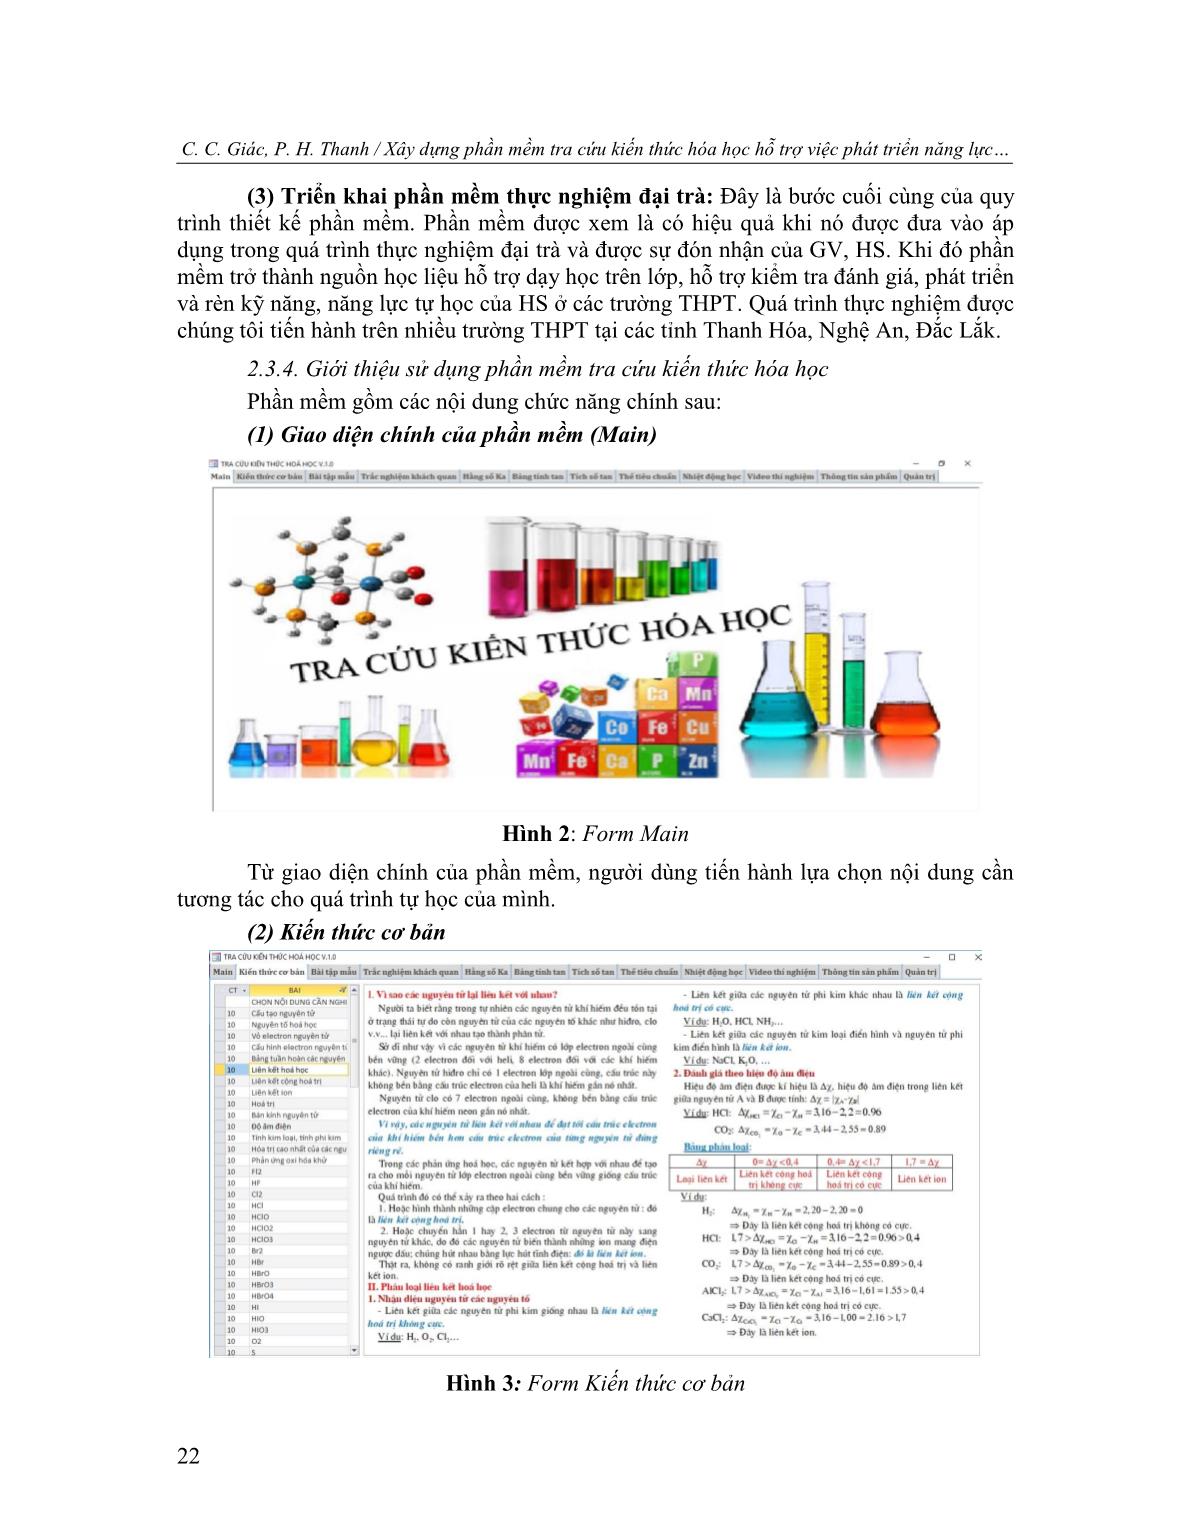 Xây dựng phần mềm tra cứu kiến thức hóa học hỗ trợ việc phát triển năng lực tự học hóa học cho học sinh trung học phổ thông trang 4